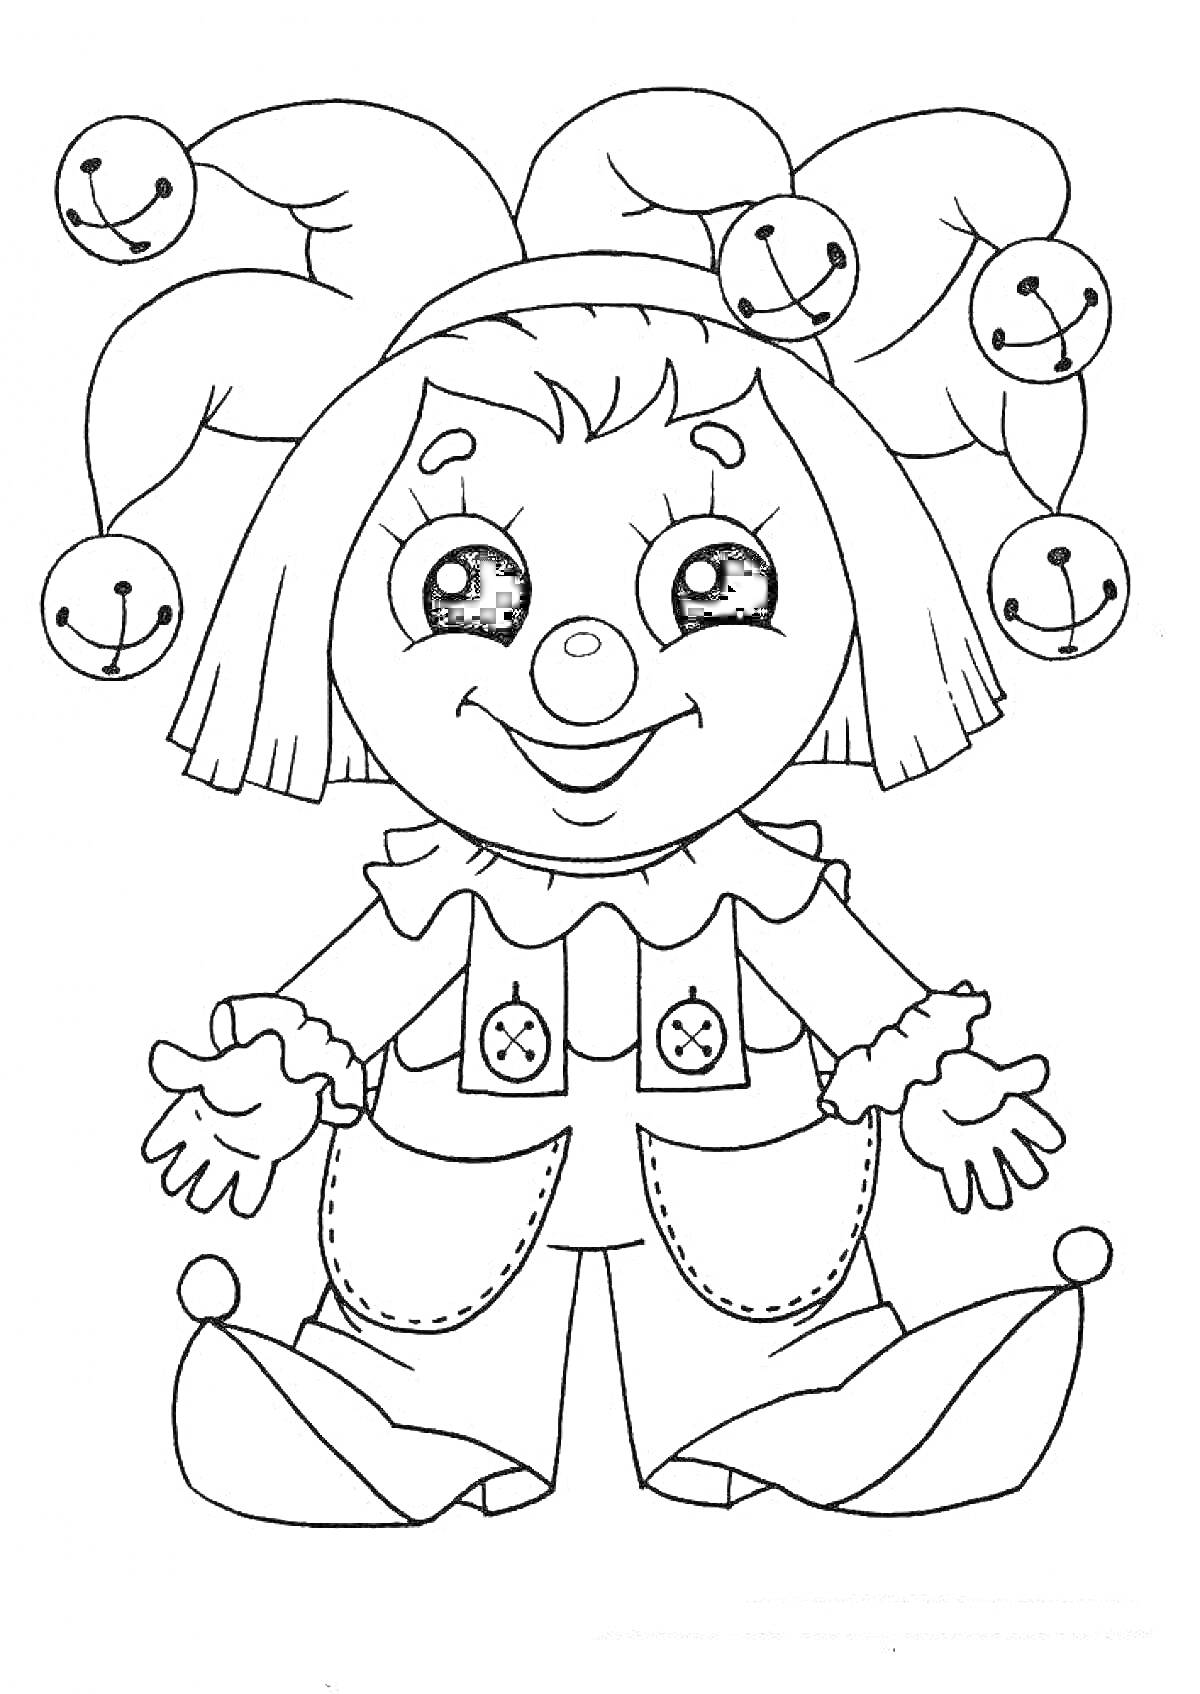 Раскраска Клоун в костюме с колпаком и бубенцами, с большими глазами и пуговицами на штанах